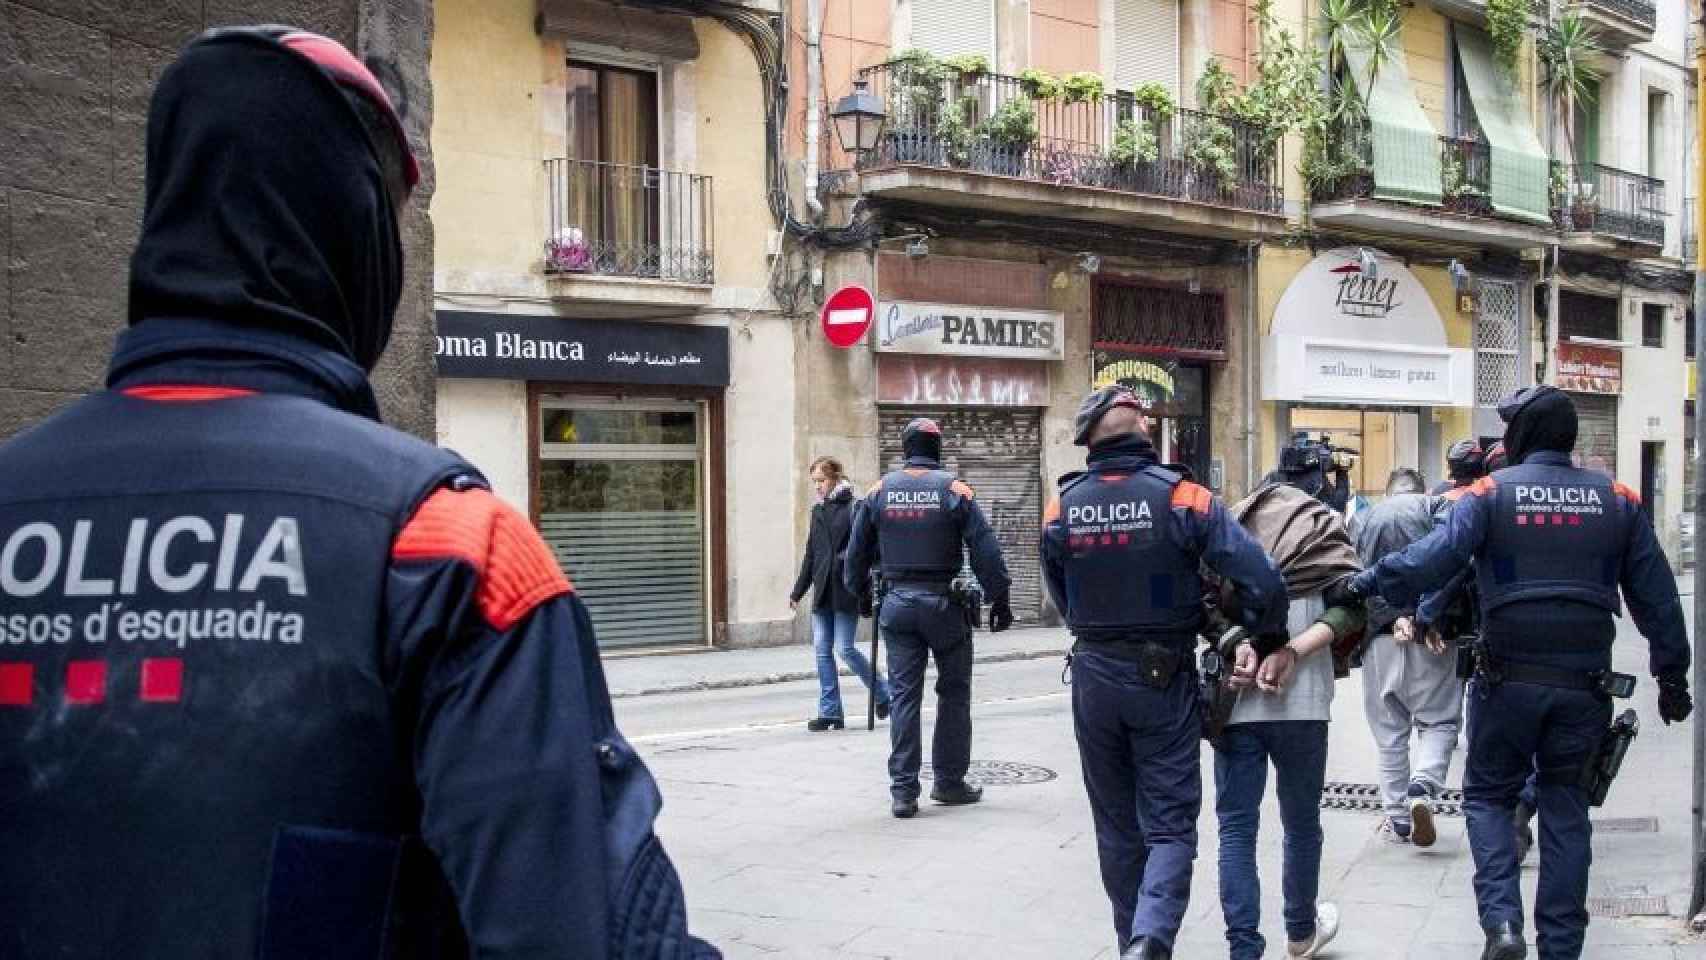 La inseguridad aumenta en Barcelona / HUGO FERNÁNDEZ